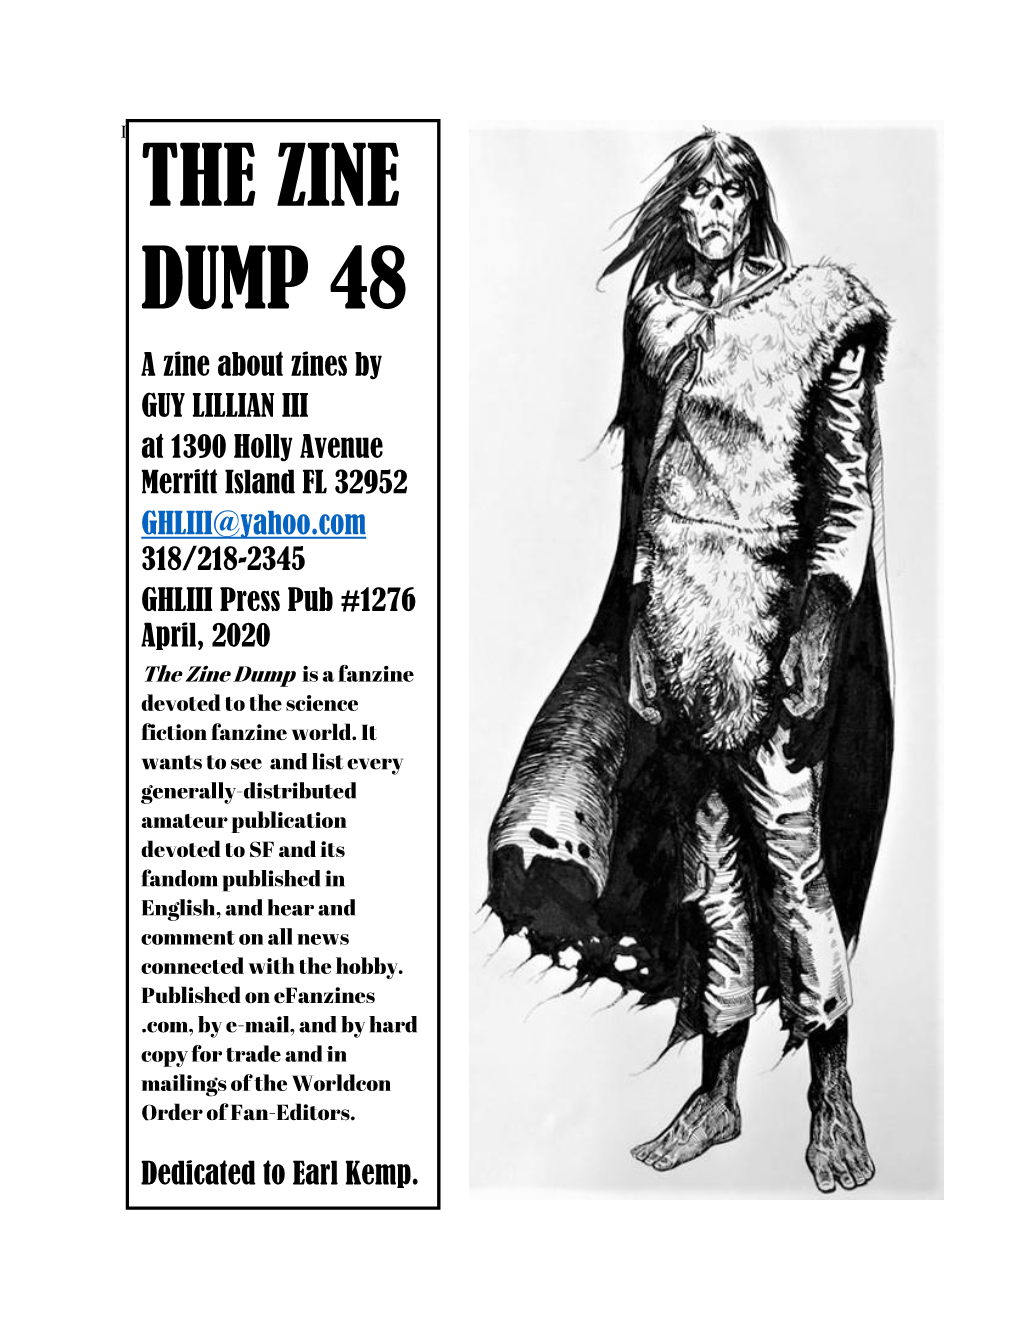 The Zine Dump 48